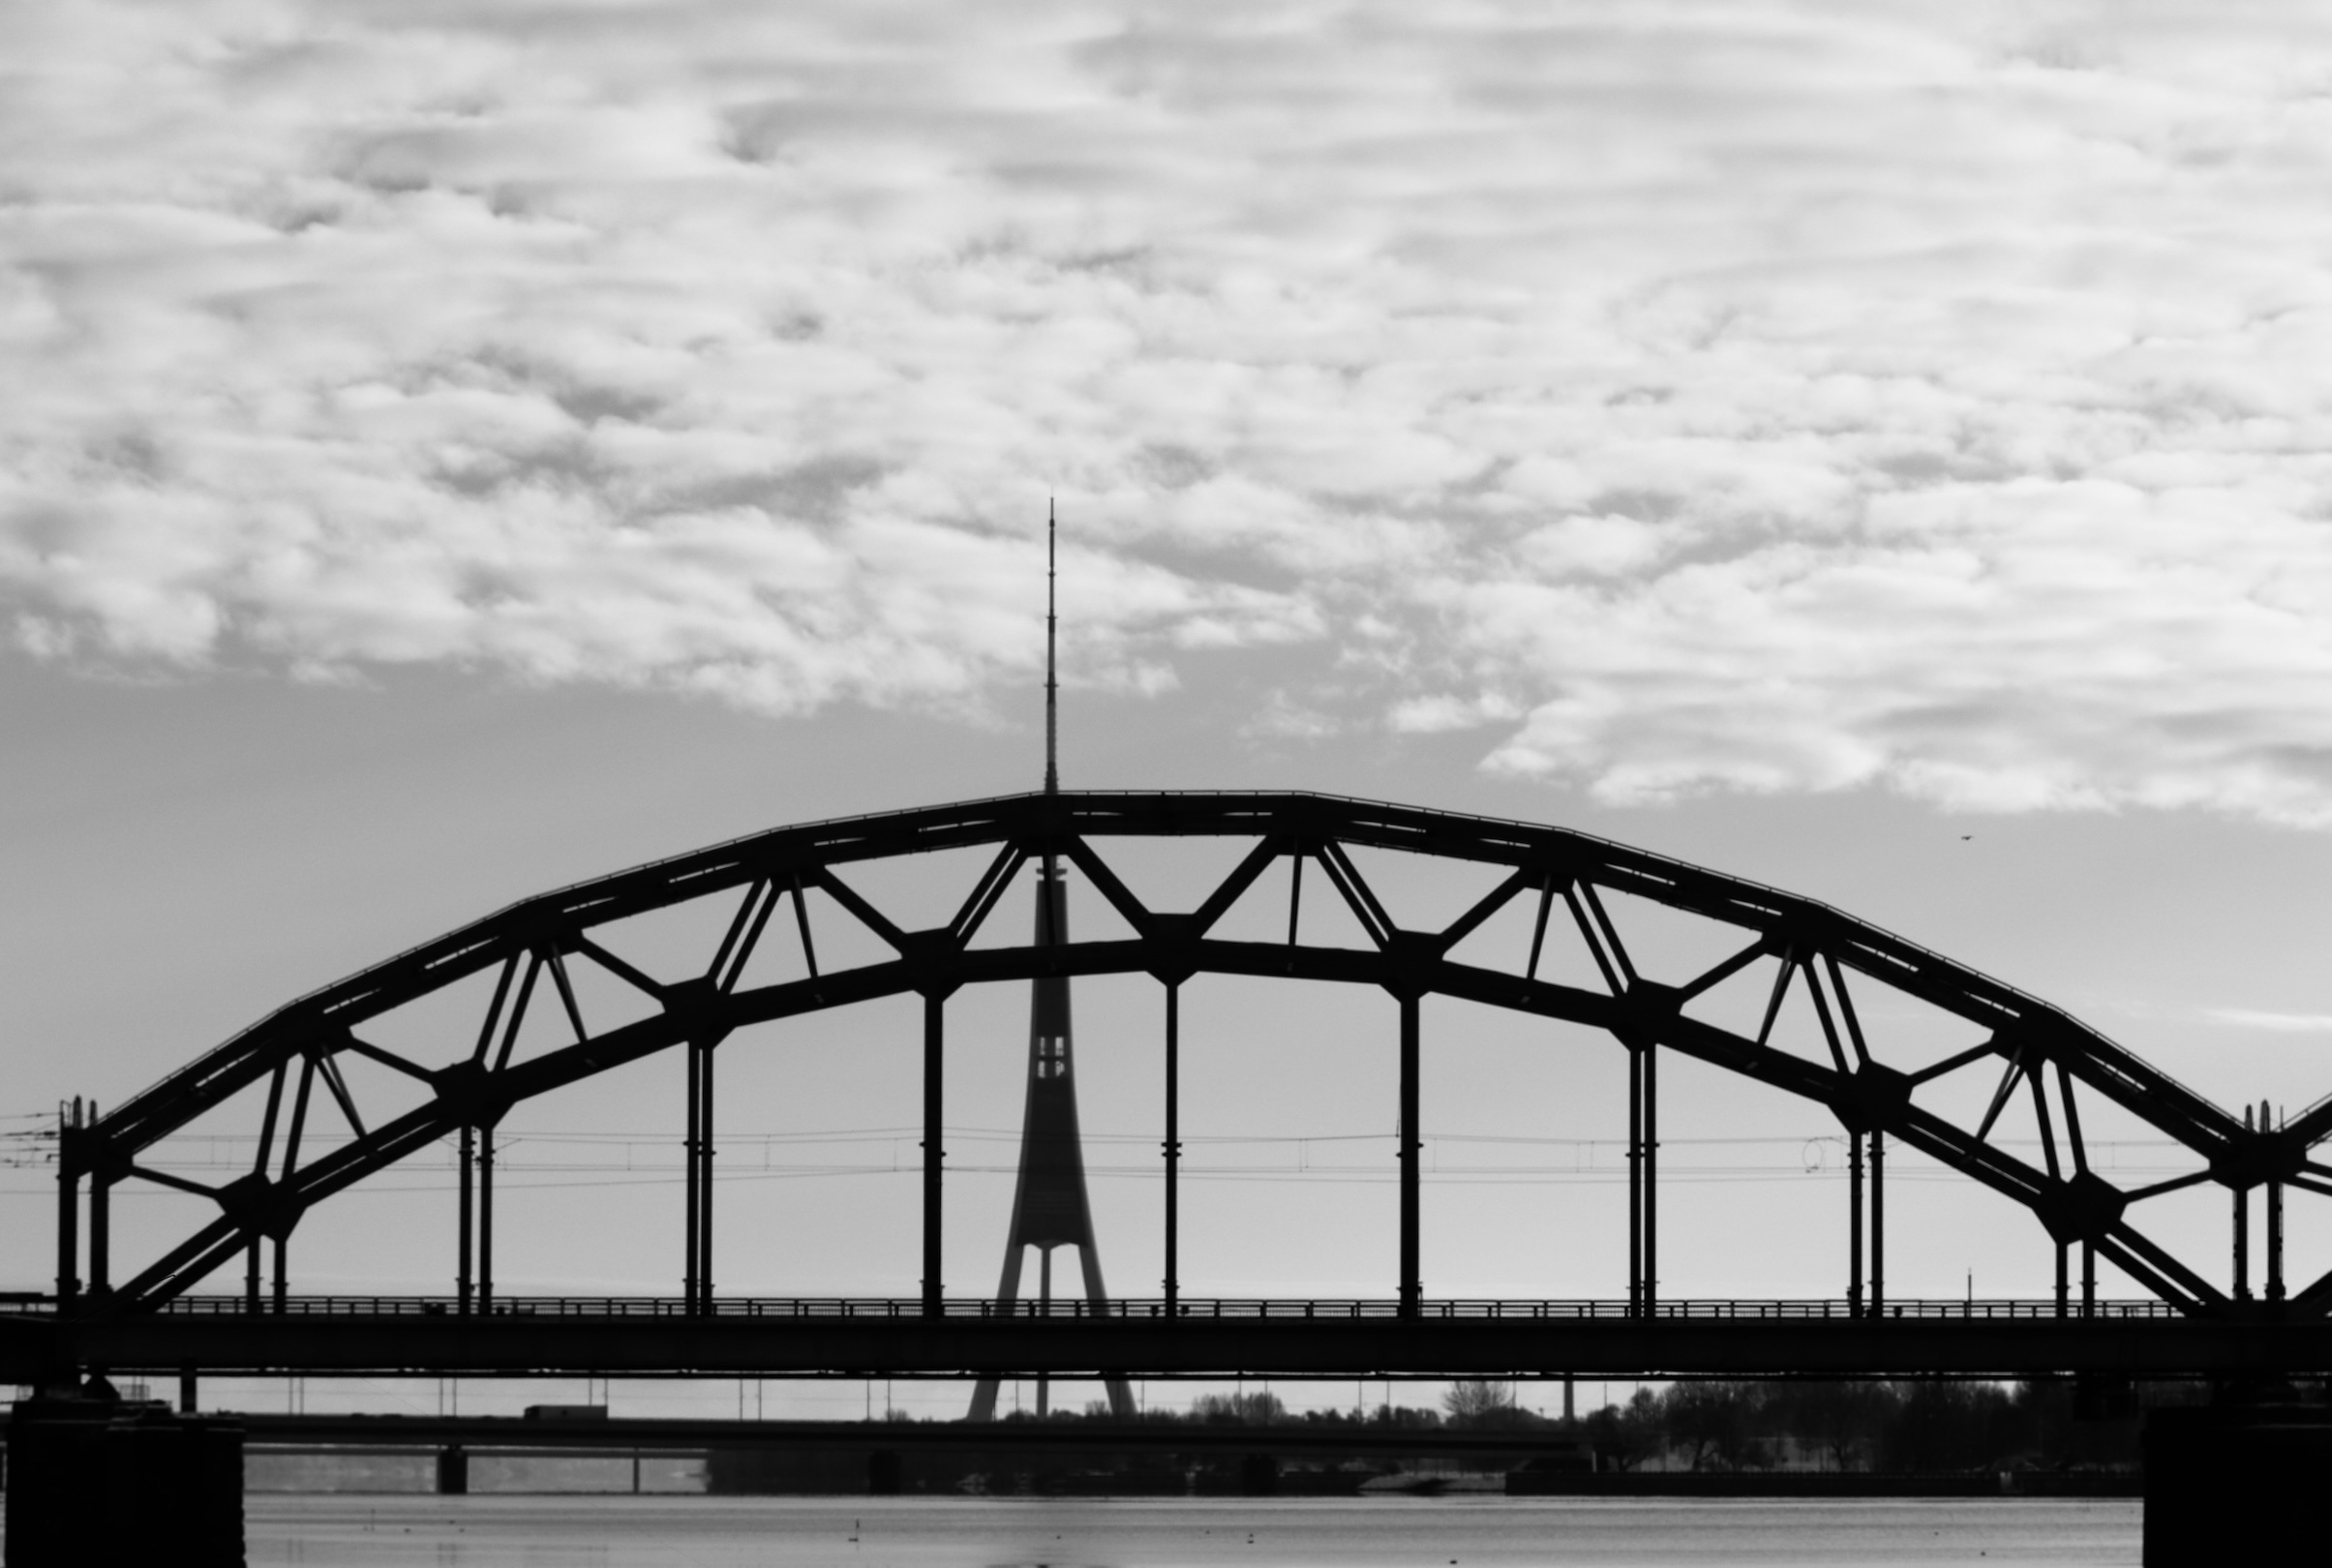 The Riga TV Tower as seen through a bridge